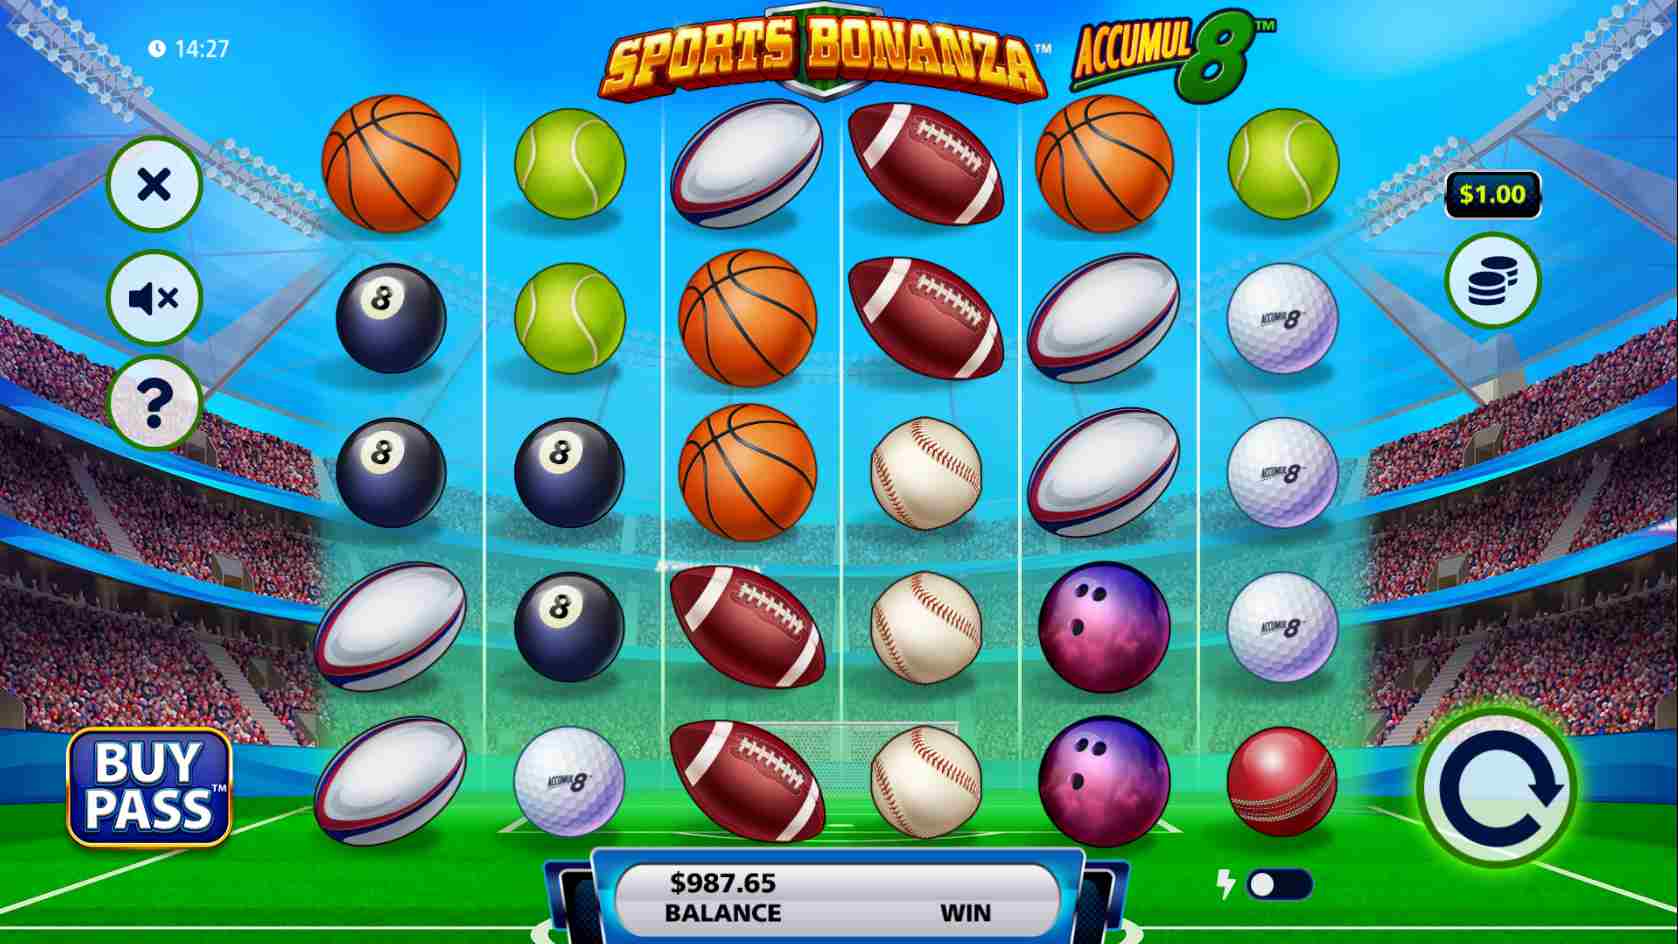 Sports Bonanza Accumul8 Base Game